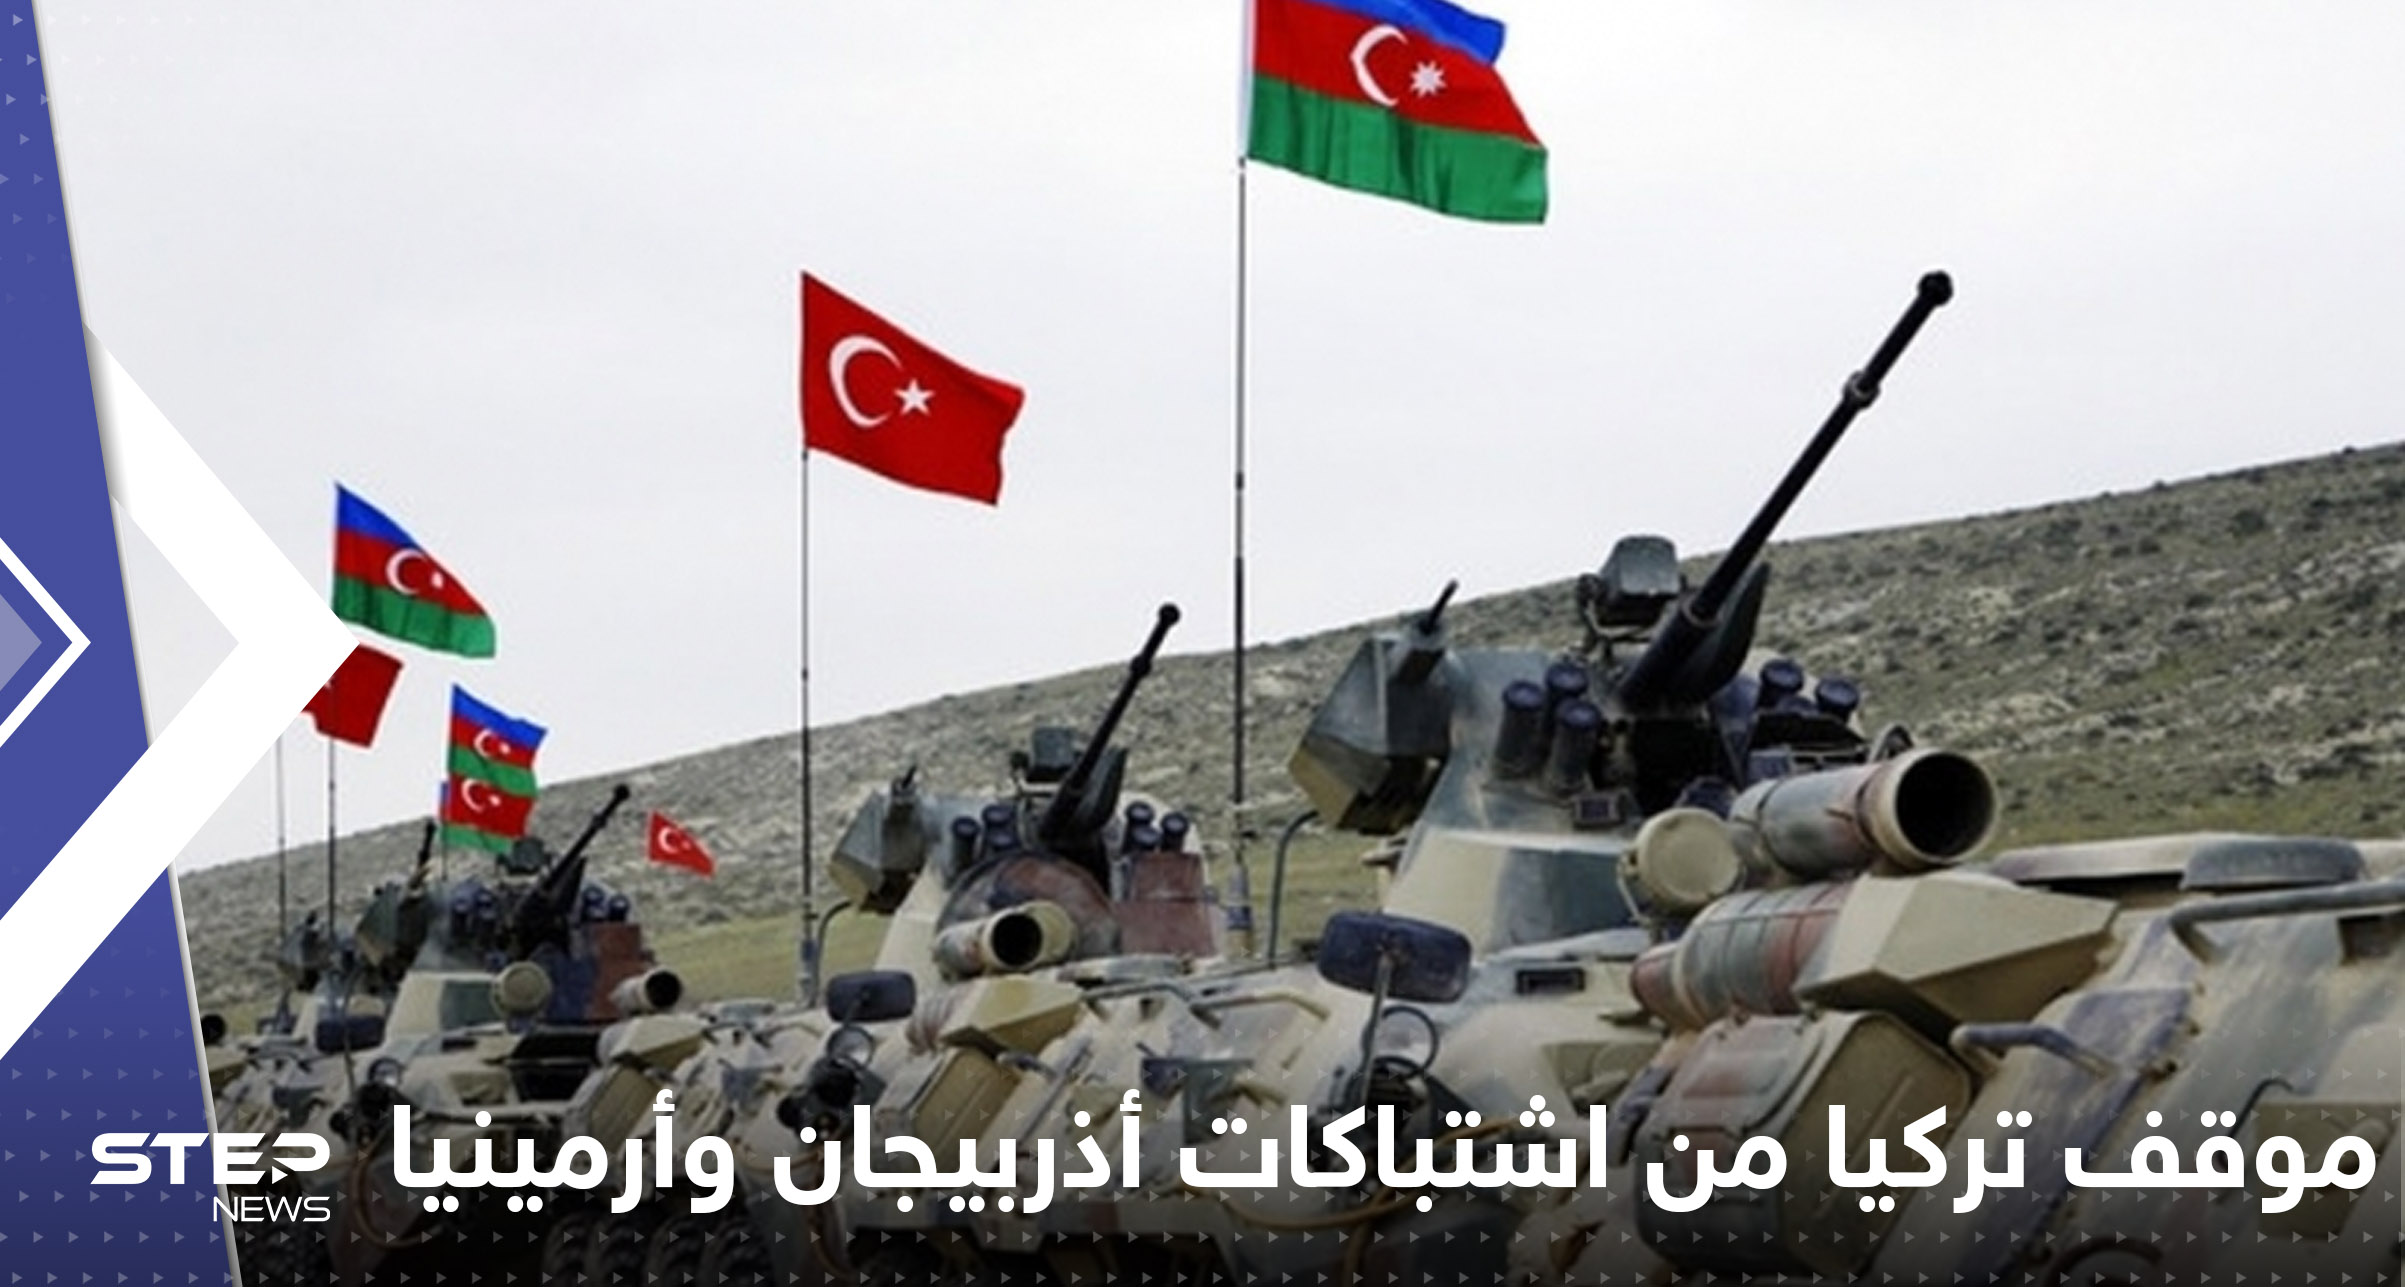 تركيا تعلن موقفها من اشتباكات أذربيجان وأرمينيا: لن نتركها وحيدة